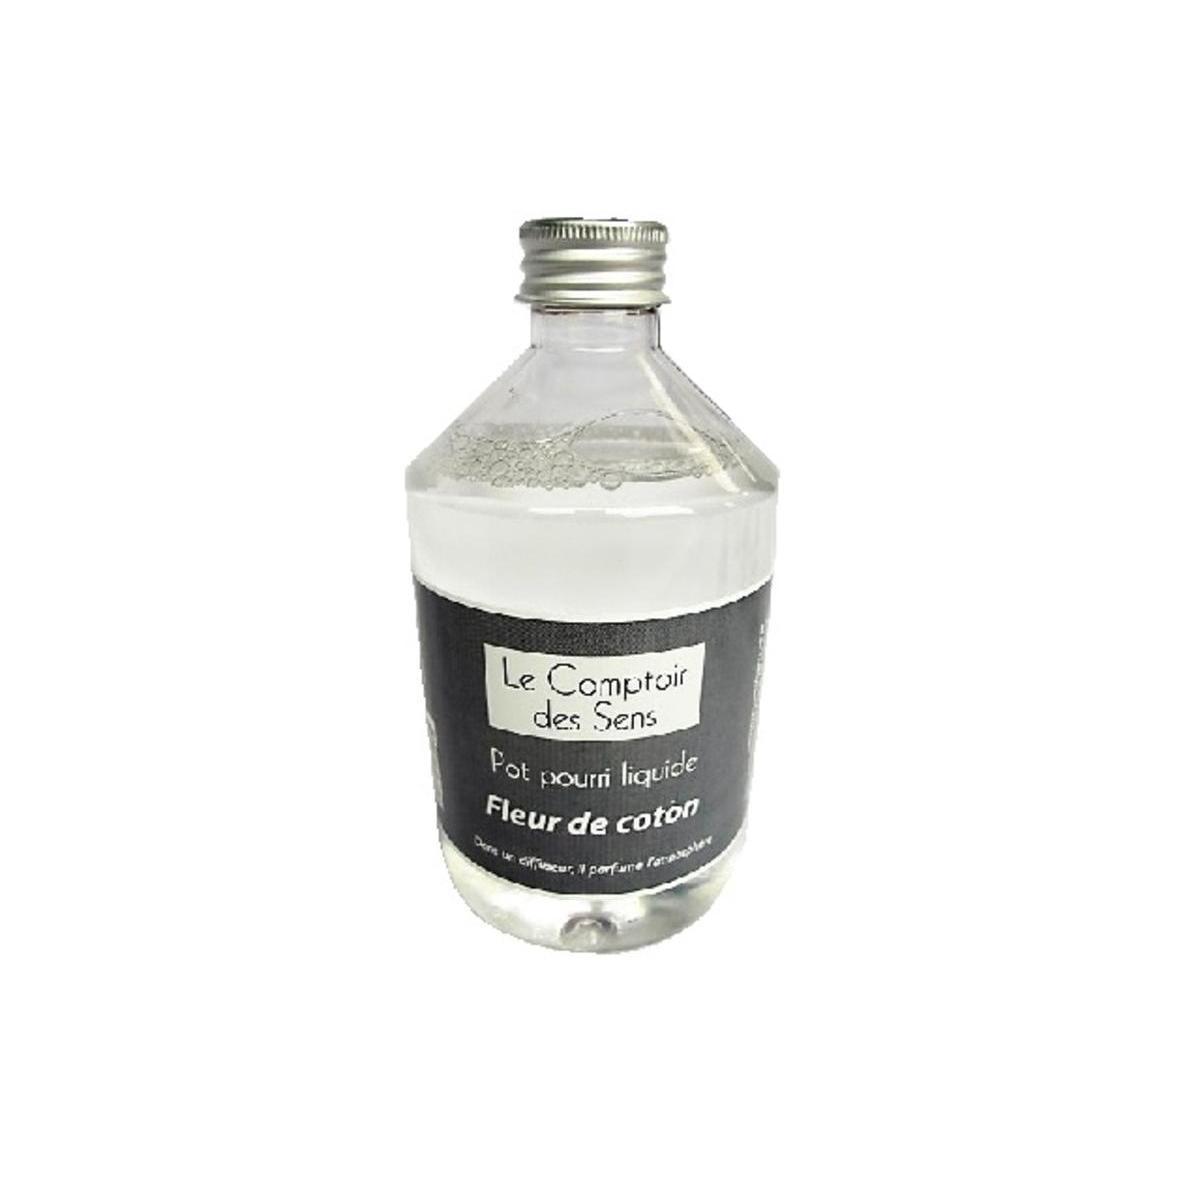 Pot-pourri liquide - 50 cl - Transparent - LE COMPTOIR DES SENS